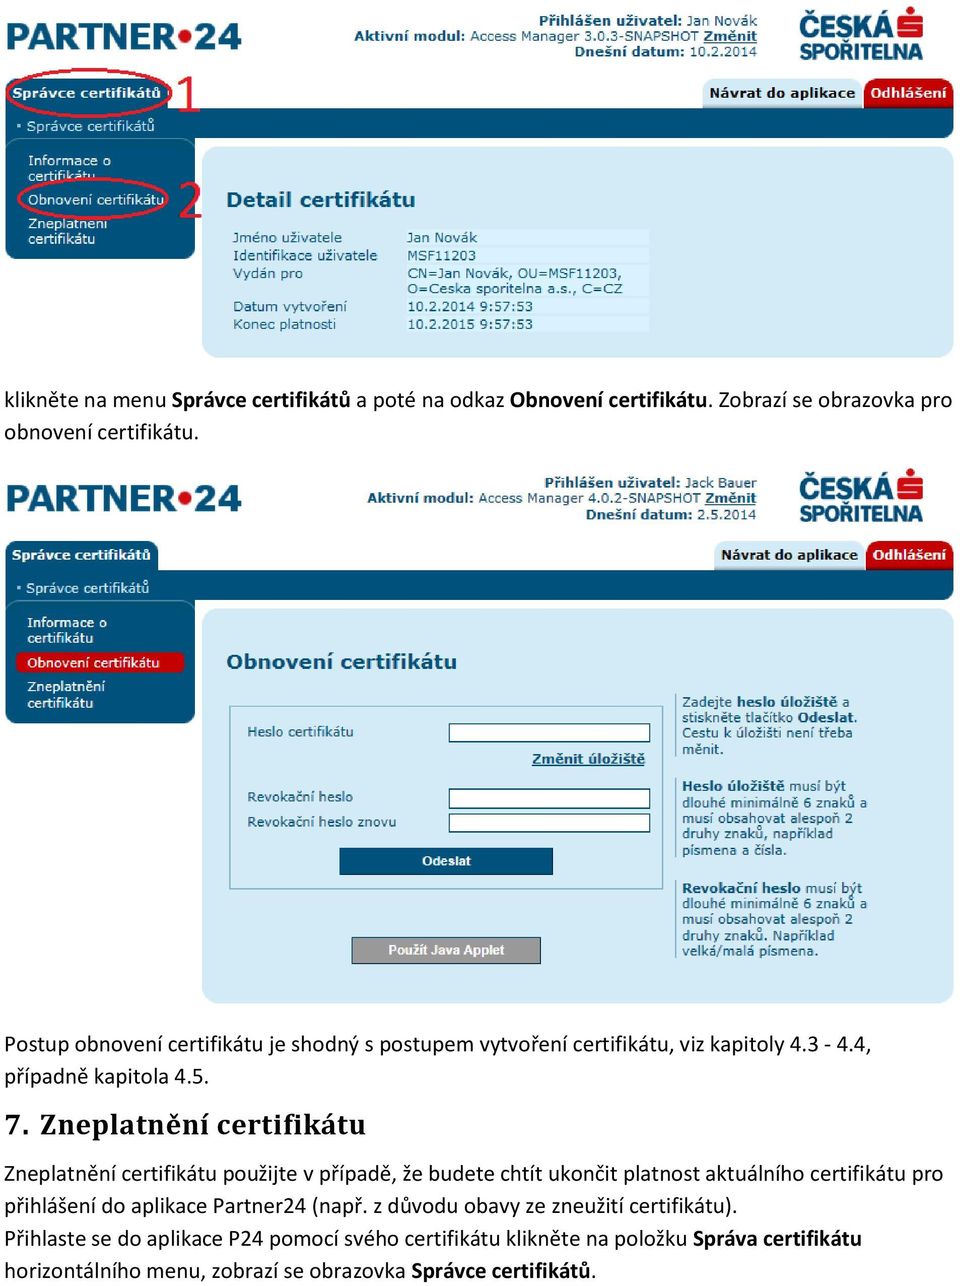 Zneplatnění certifikátu Zneplatnění certifikátu použijte v případě, že budete chtít ukončit platnost aktuálního certifikátu pro přihlášení do aplikace